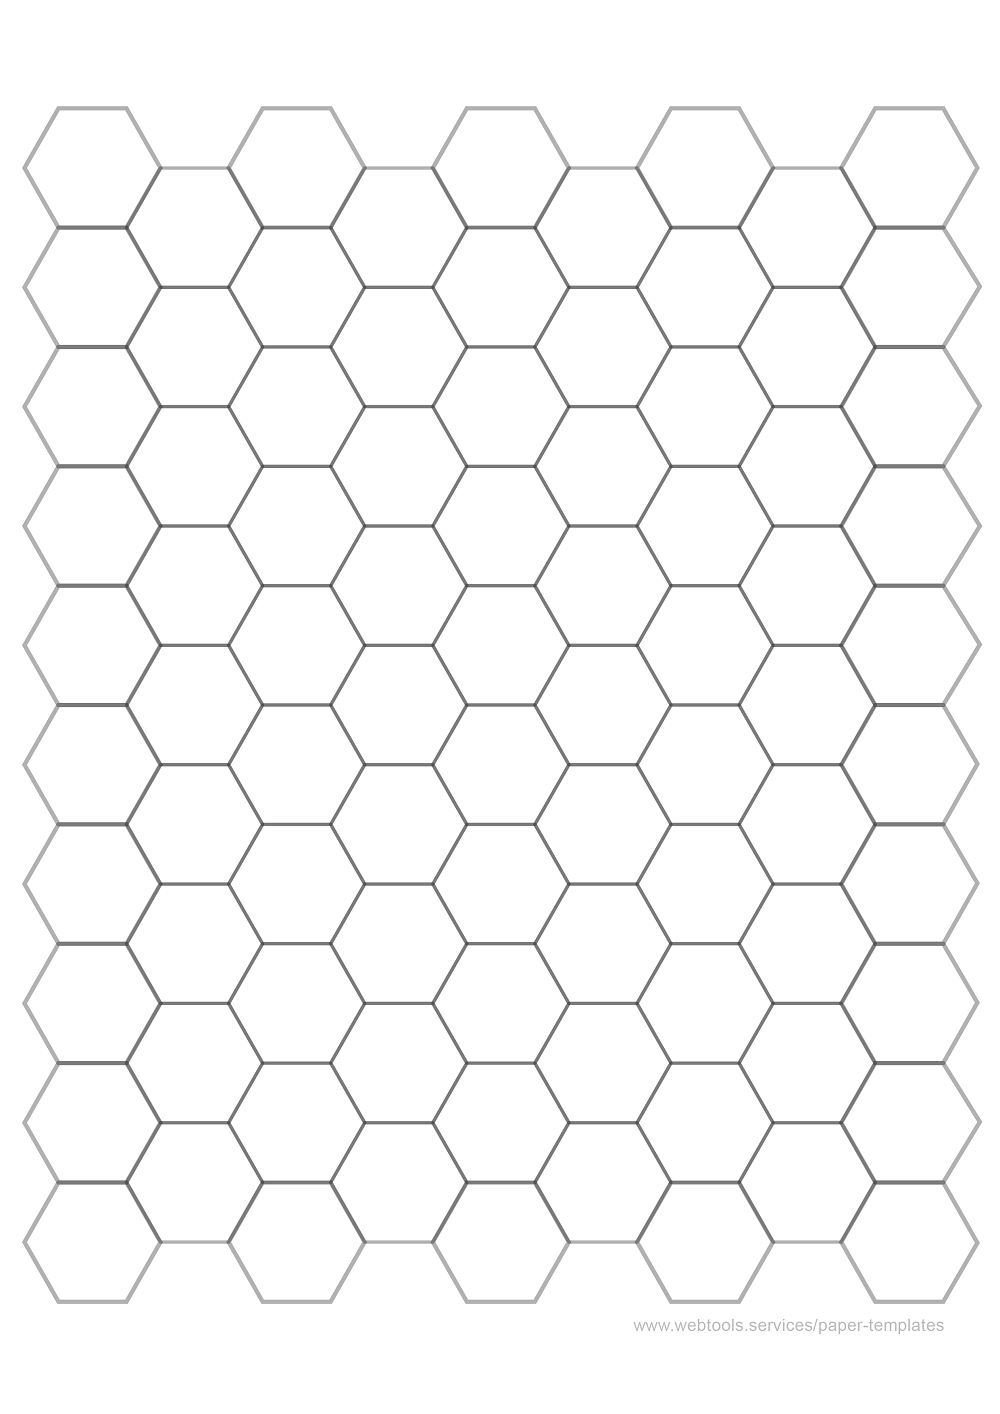 1 Inch Hexagonal Grid Paper